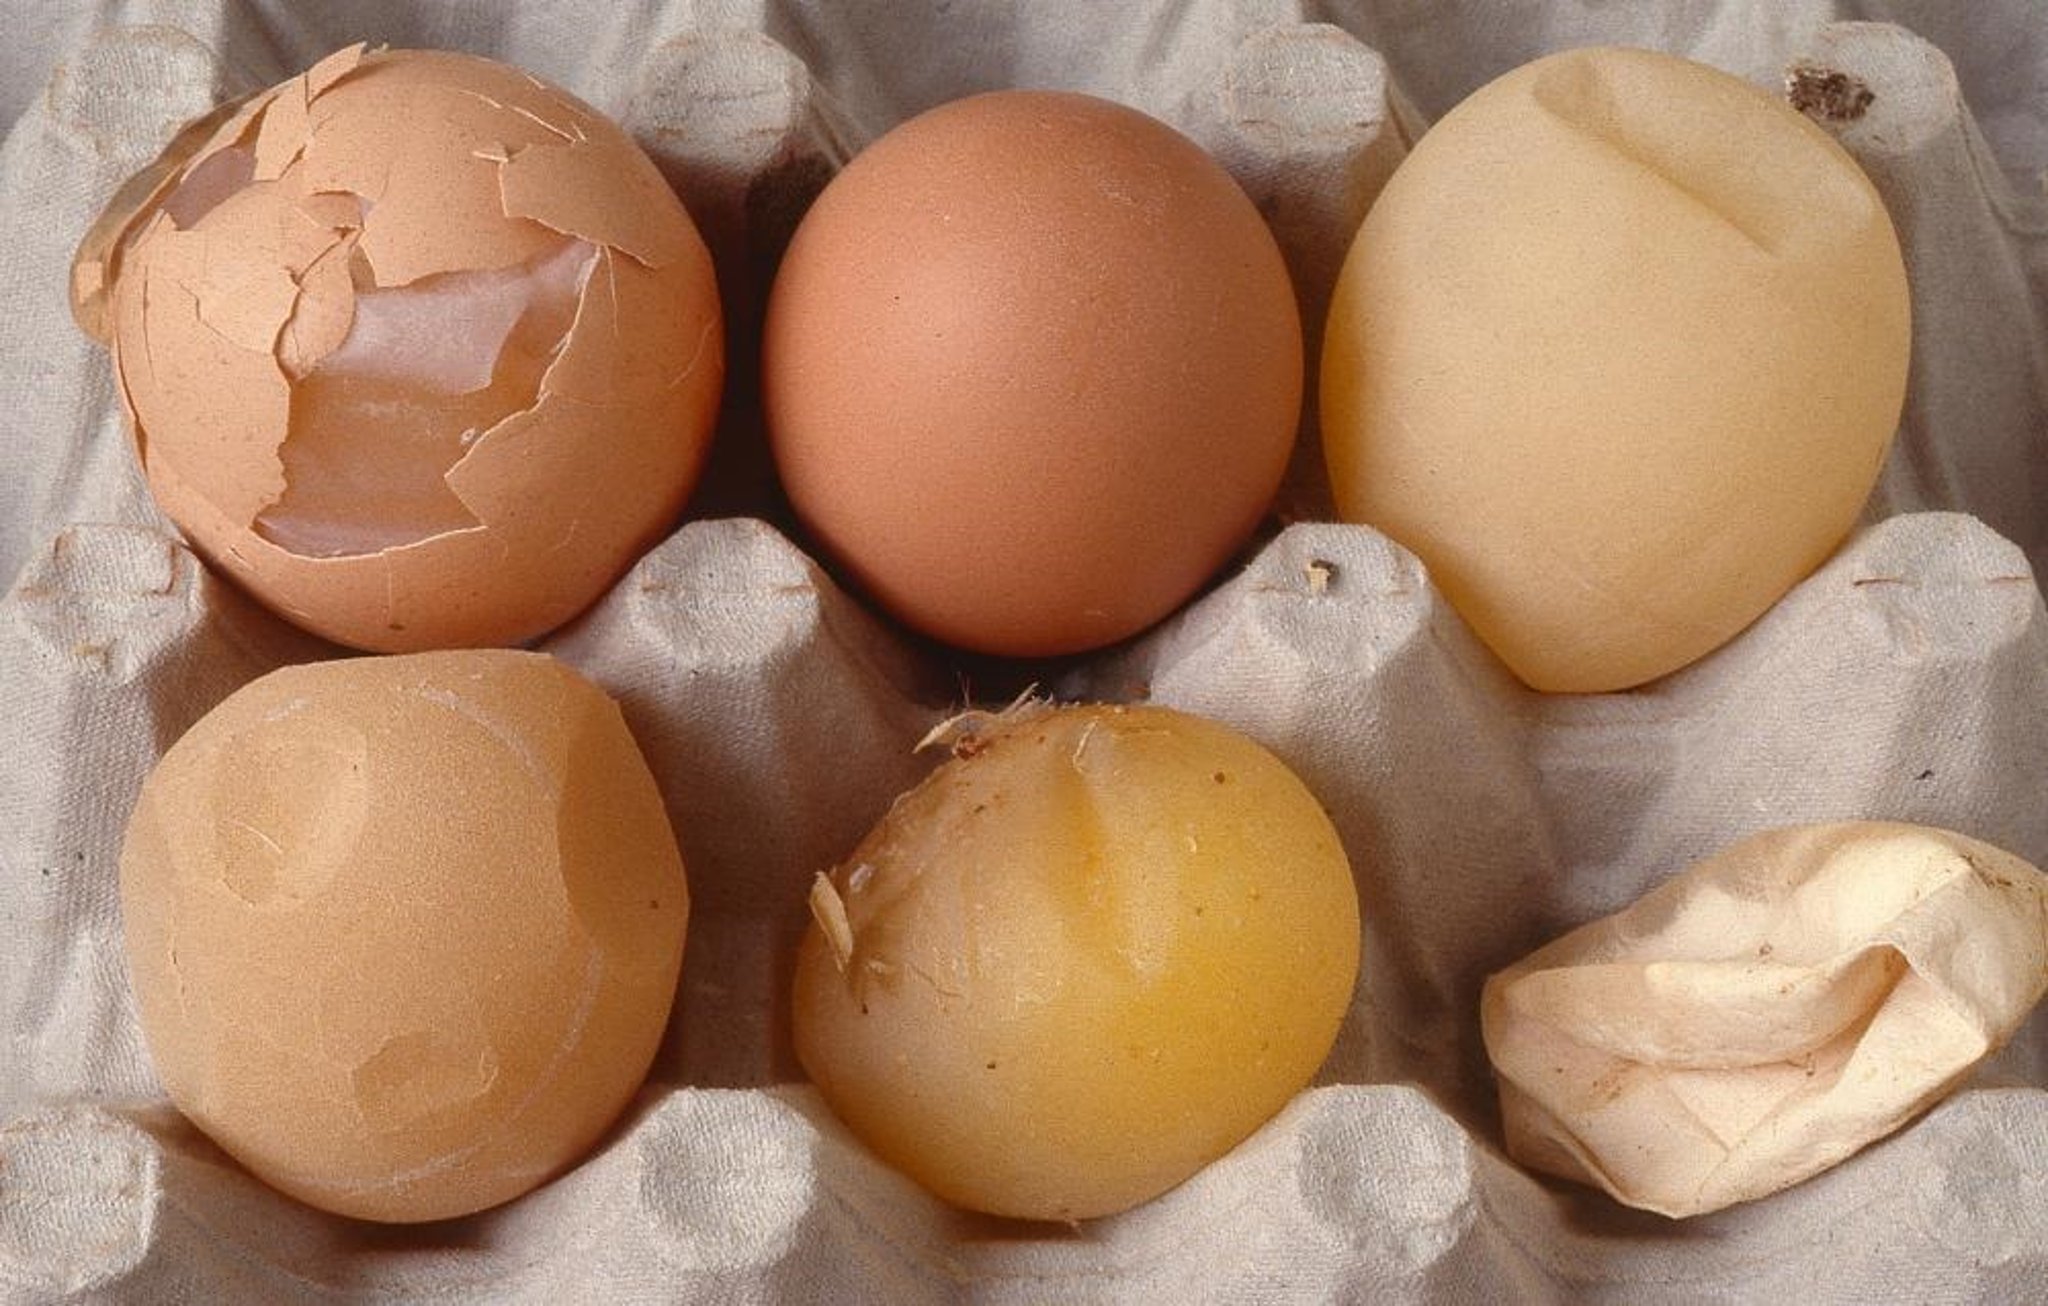 Egg drop syndrome ’76 eggs